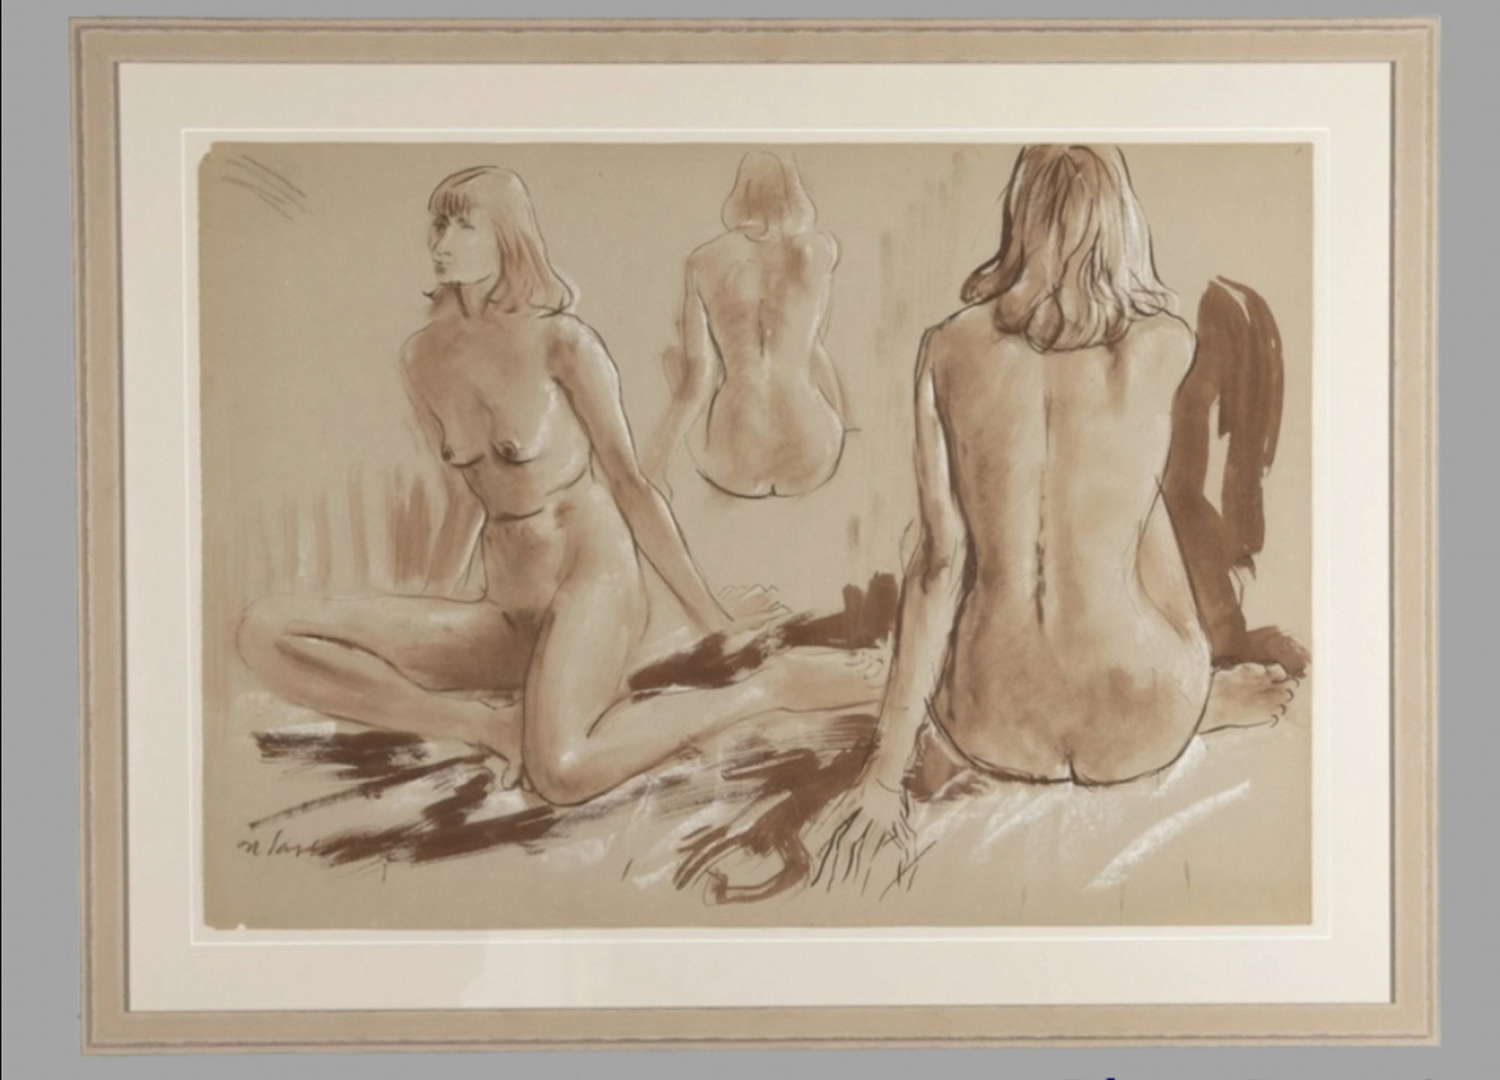 Derek Latymer Sayer - A Nude Study of a Female